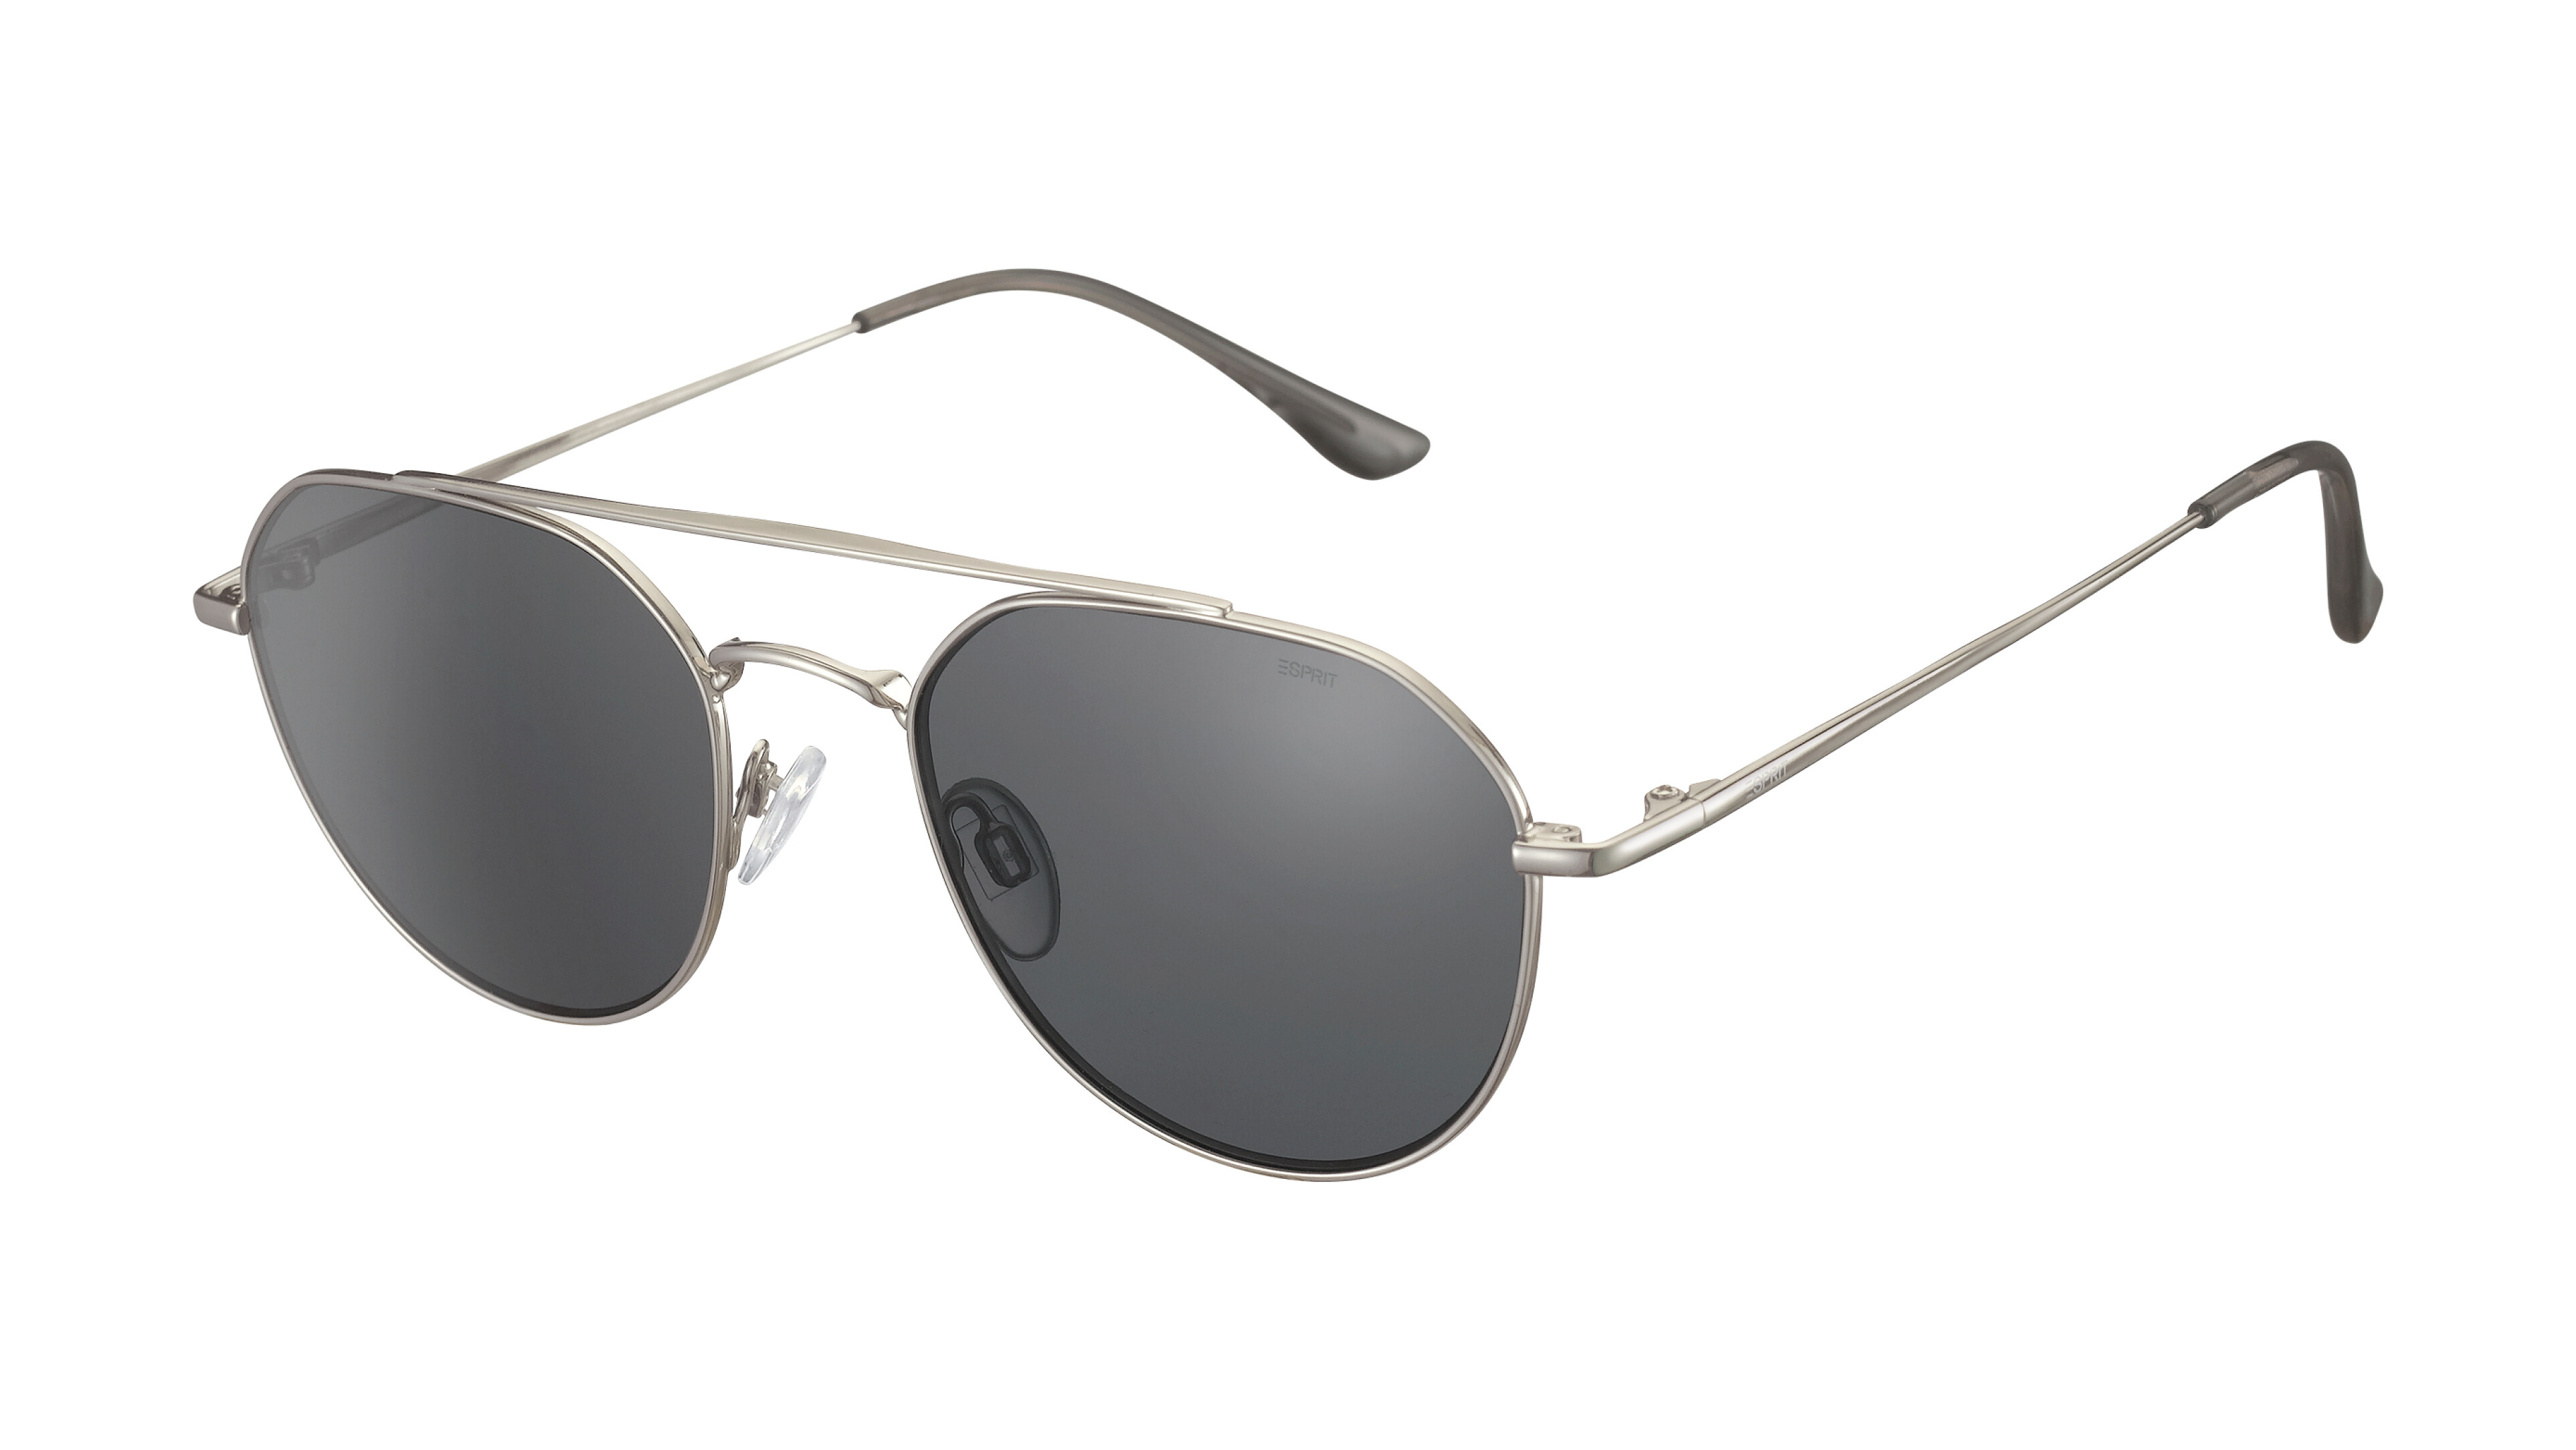 [products.image.front] Esprit 40020 524 Sonnenbrille